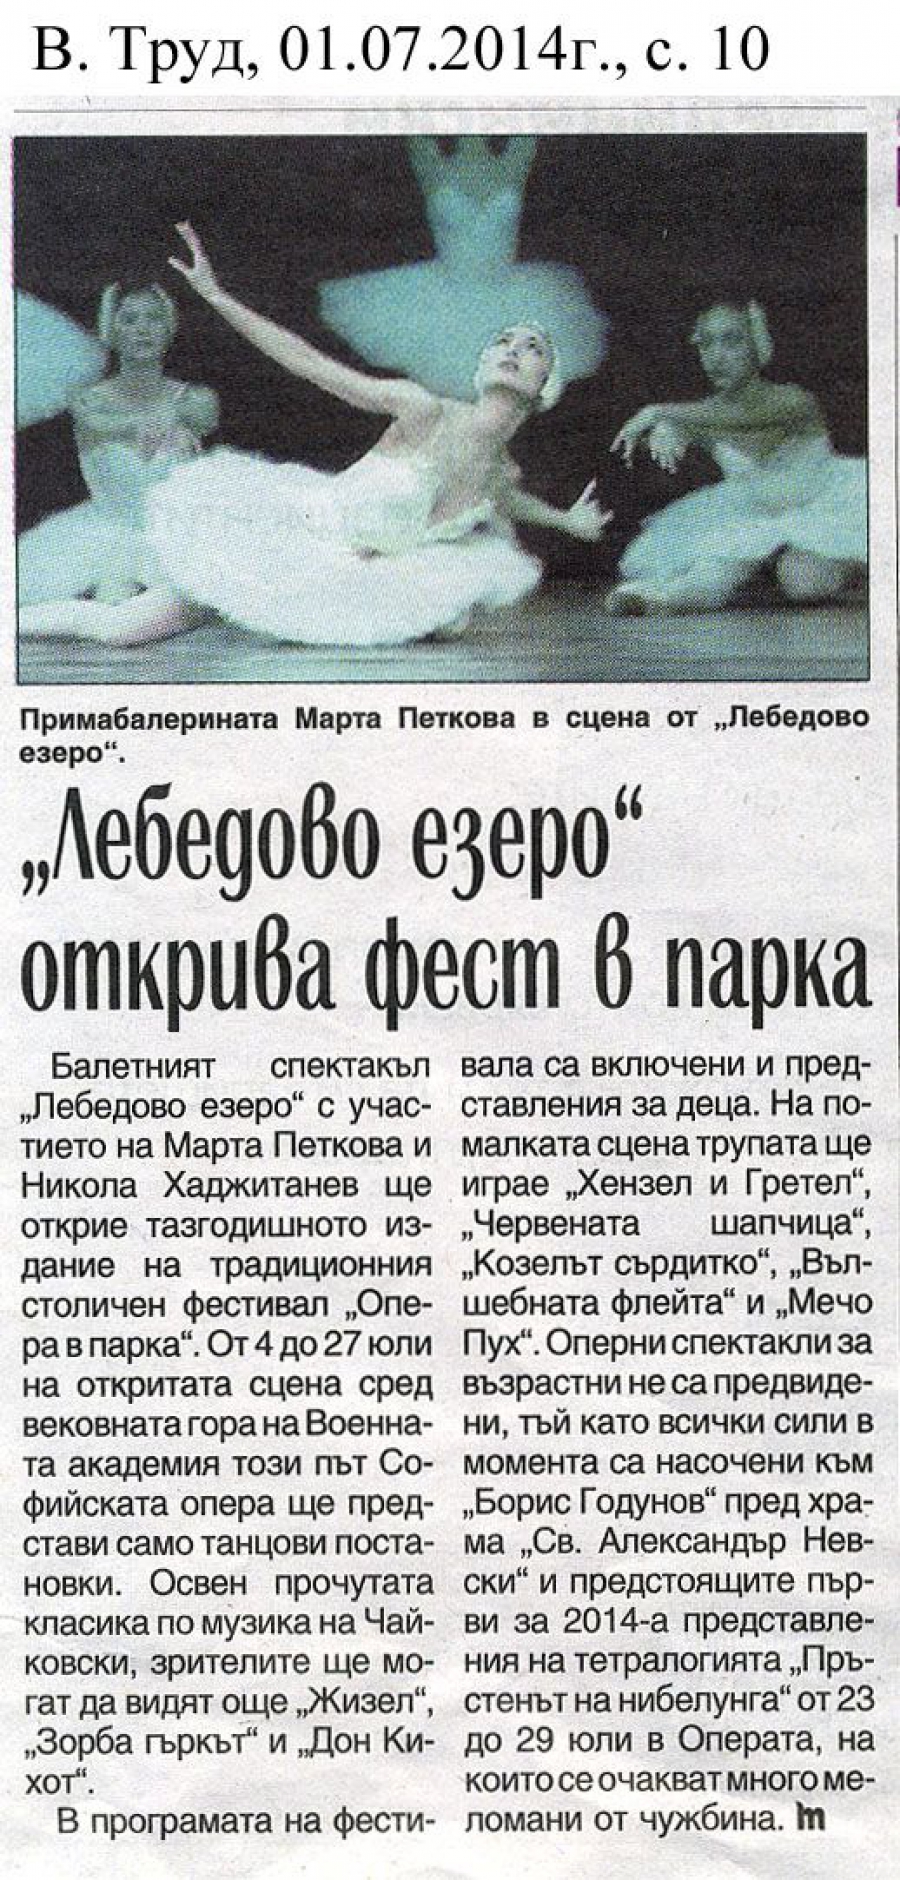 "Лебедово езеро" открива фест в парка - в-к Труд - 01.07.2014